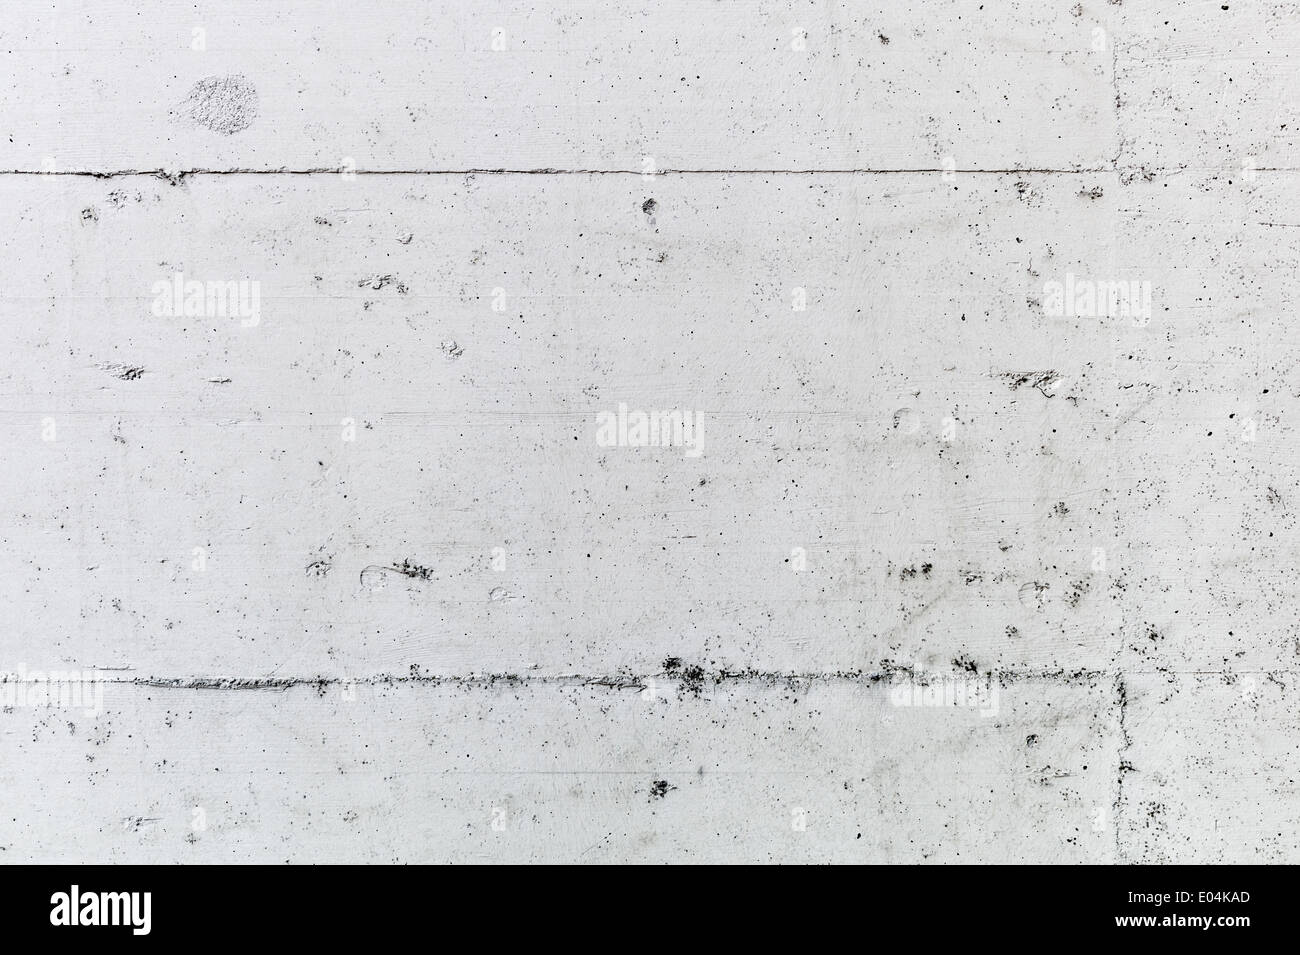 A concrete flow ace a background with text clearance., Eine Betonmauer als Hintergrund mit Textfreiraum. Stock Photo